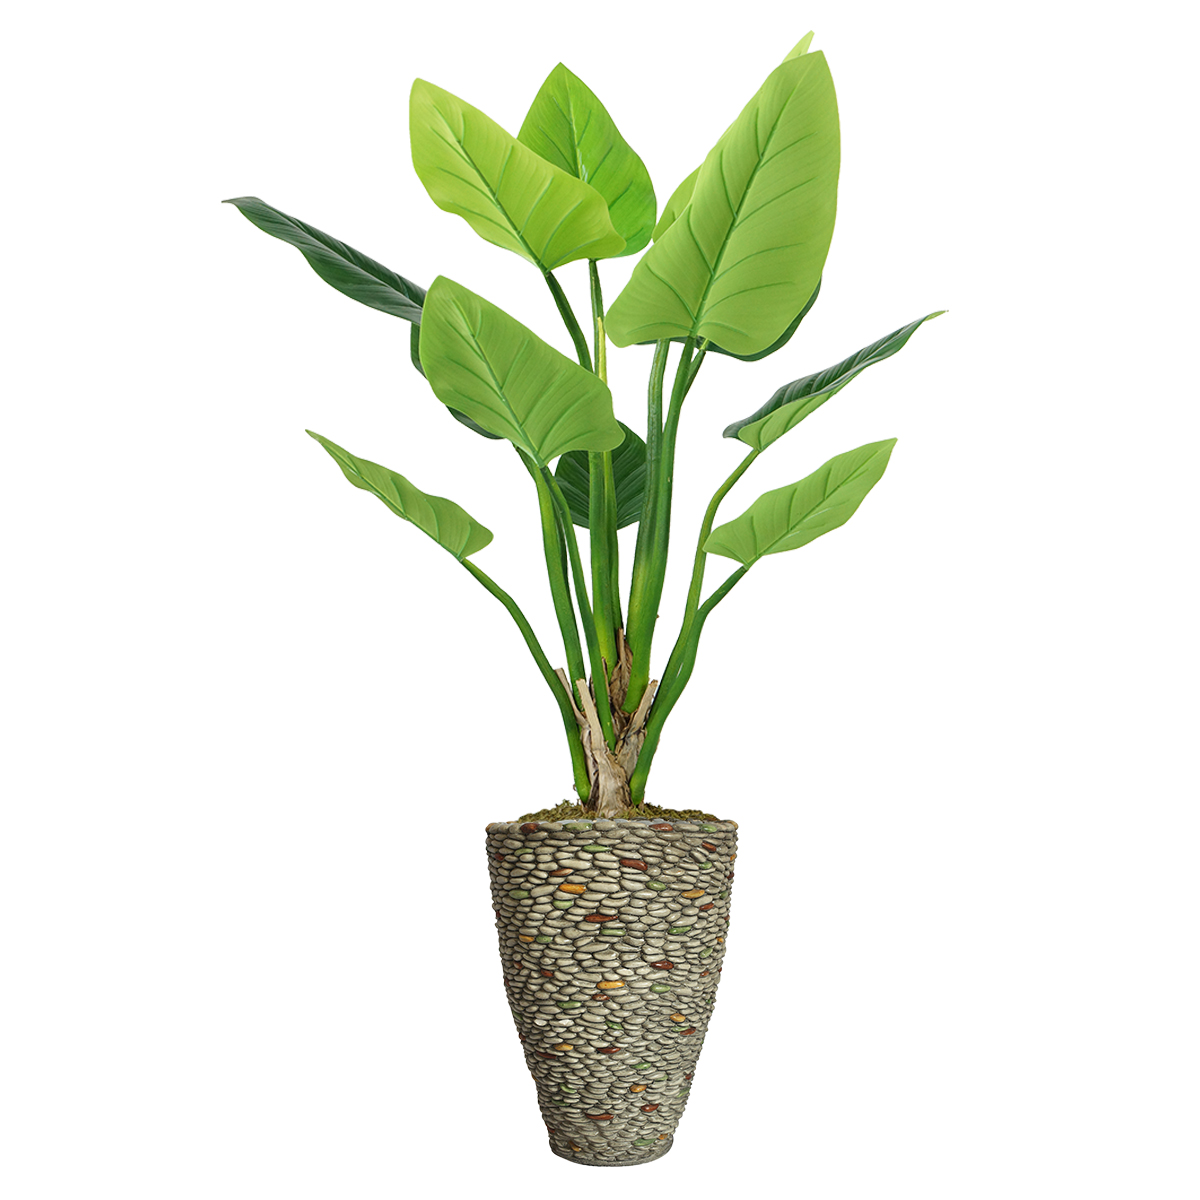 Vhx136209 85.5 In. Philodendron Erubescens Green Emerald Plant In Fiberstone Planter